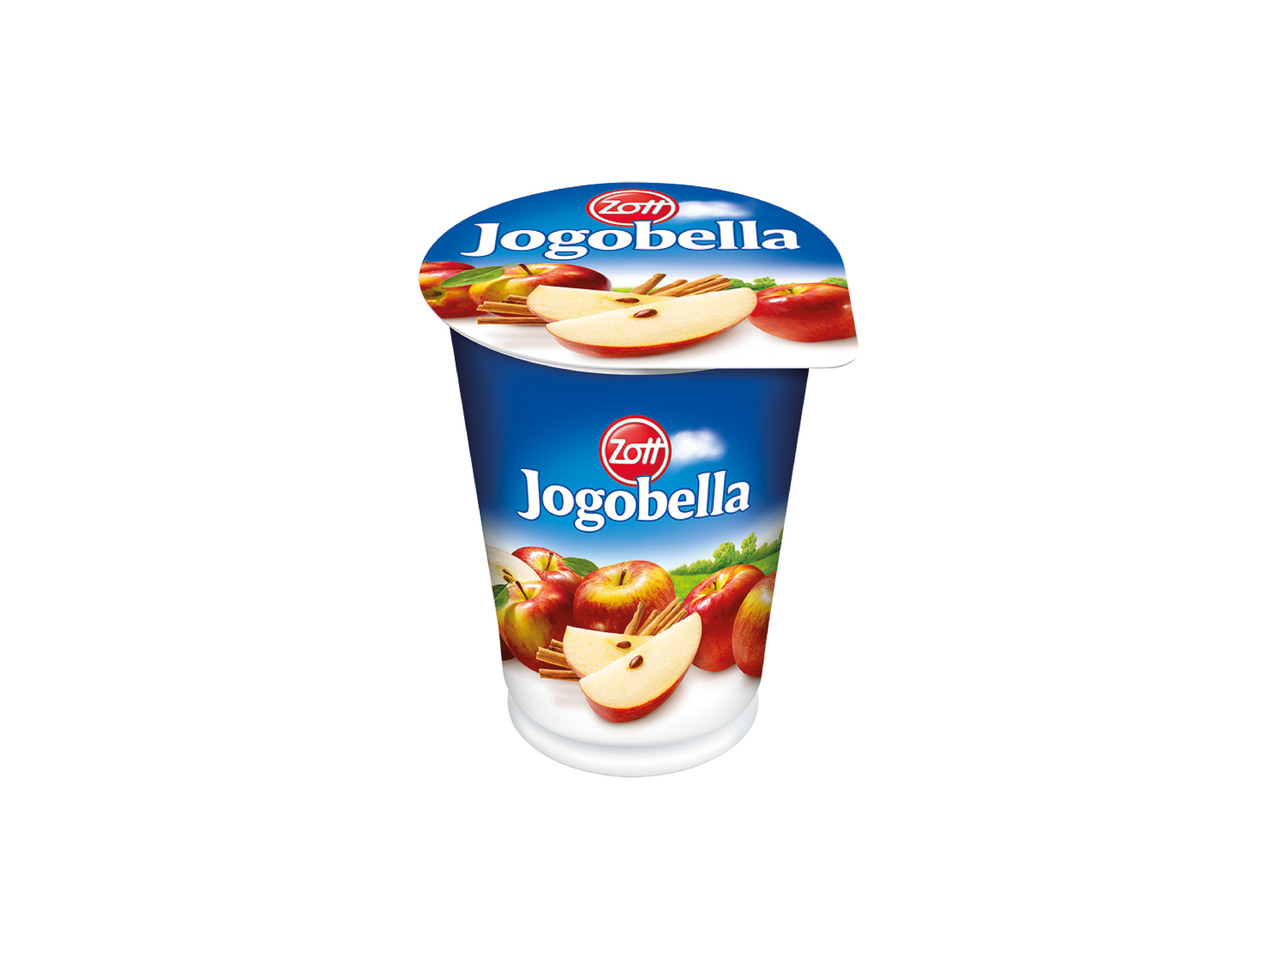 Zott Jogobella